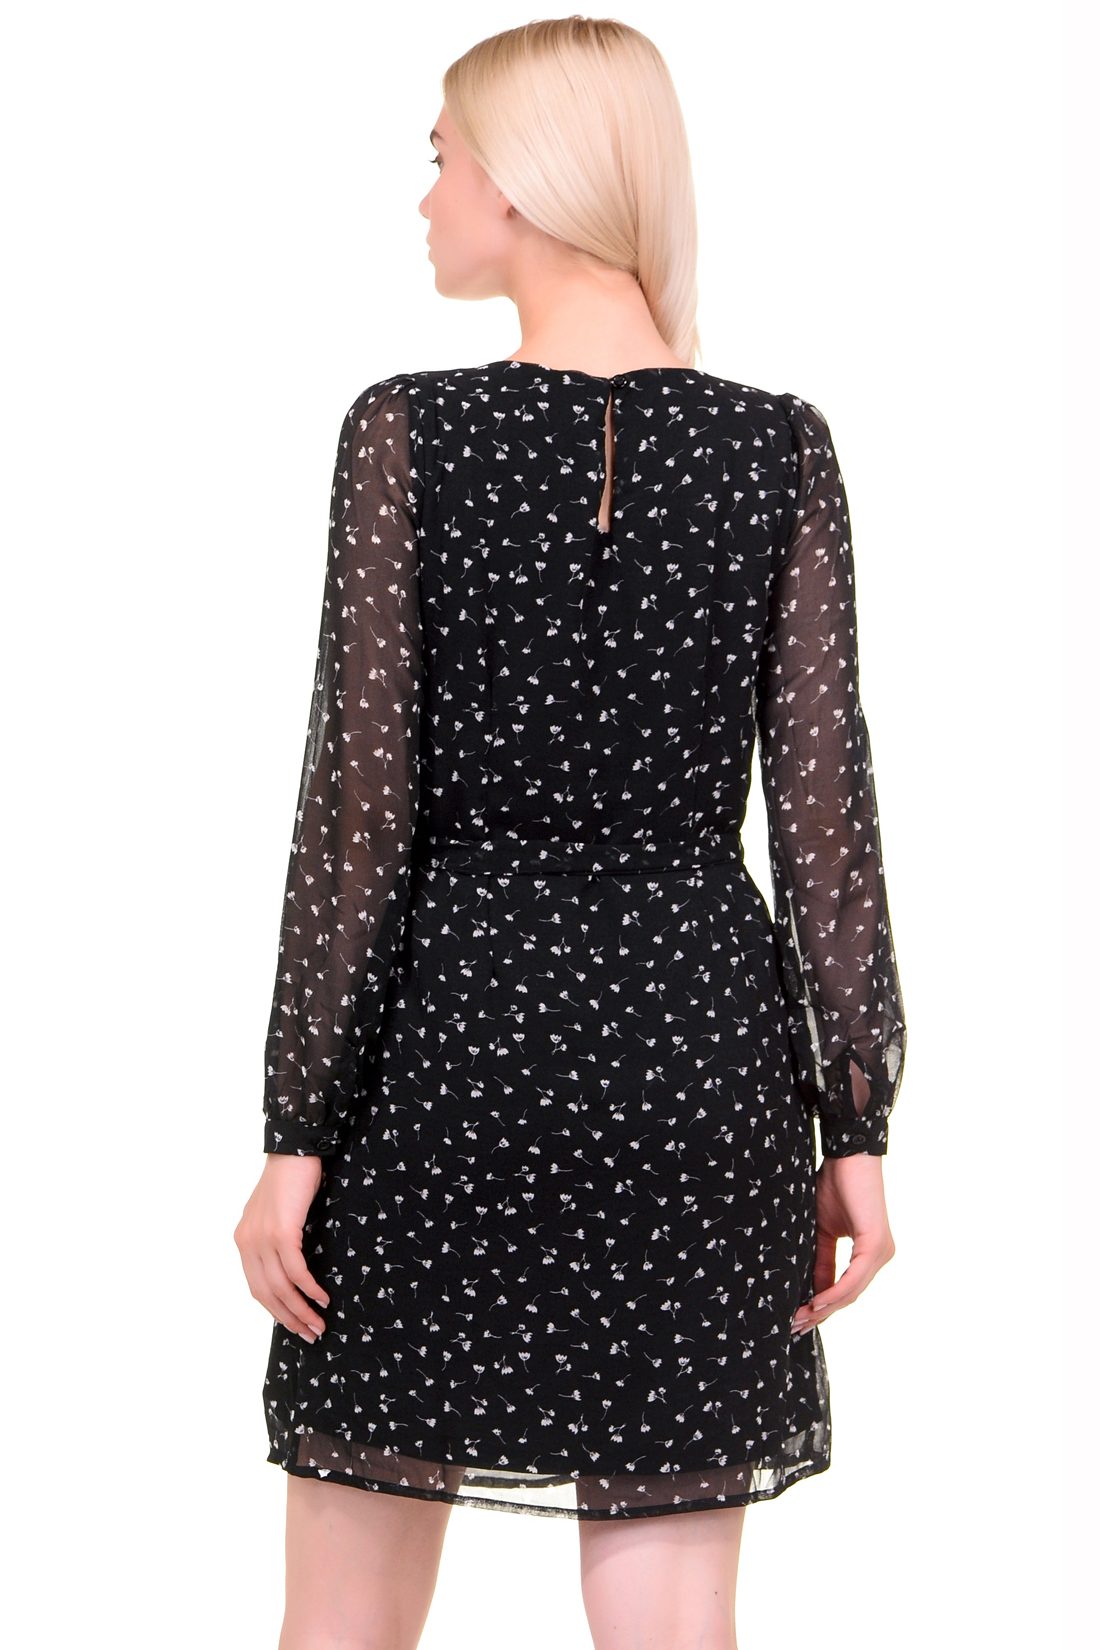 Платье из полупрозрачного материала (арт. baon B459543), размер M, цвет черный Платье из полупрозрачного материала (арт. baon B459543) - фото 2